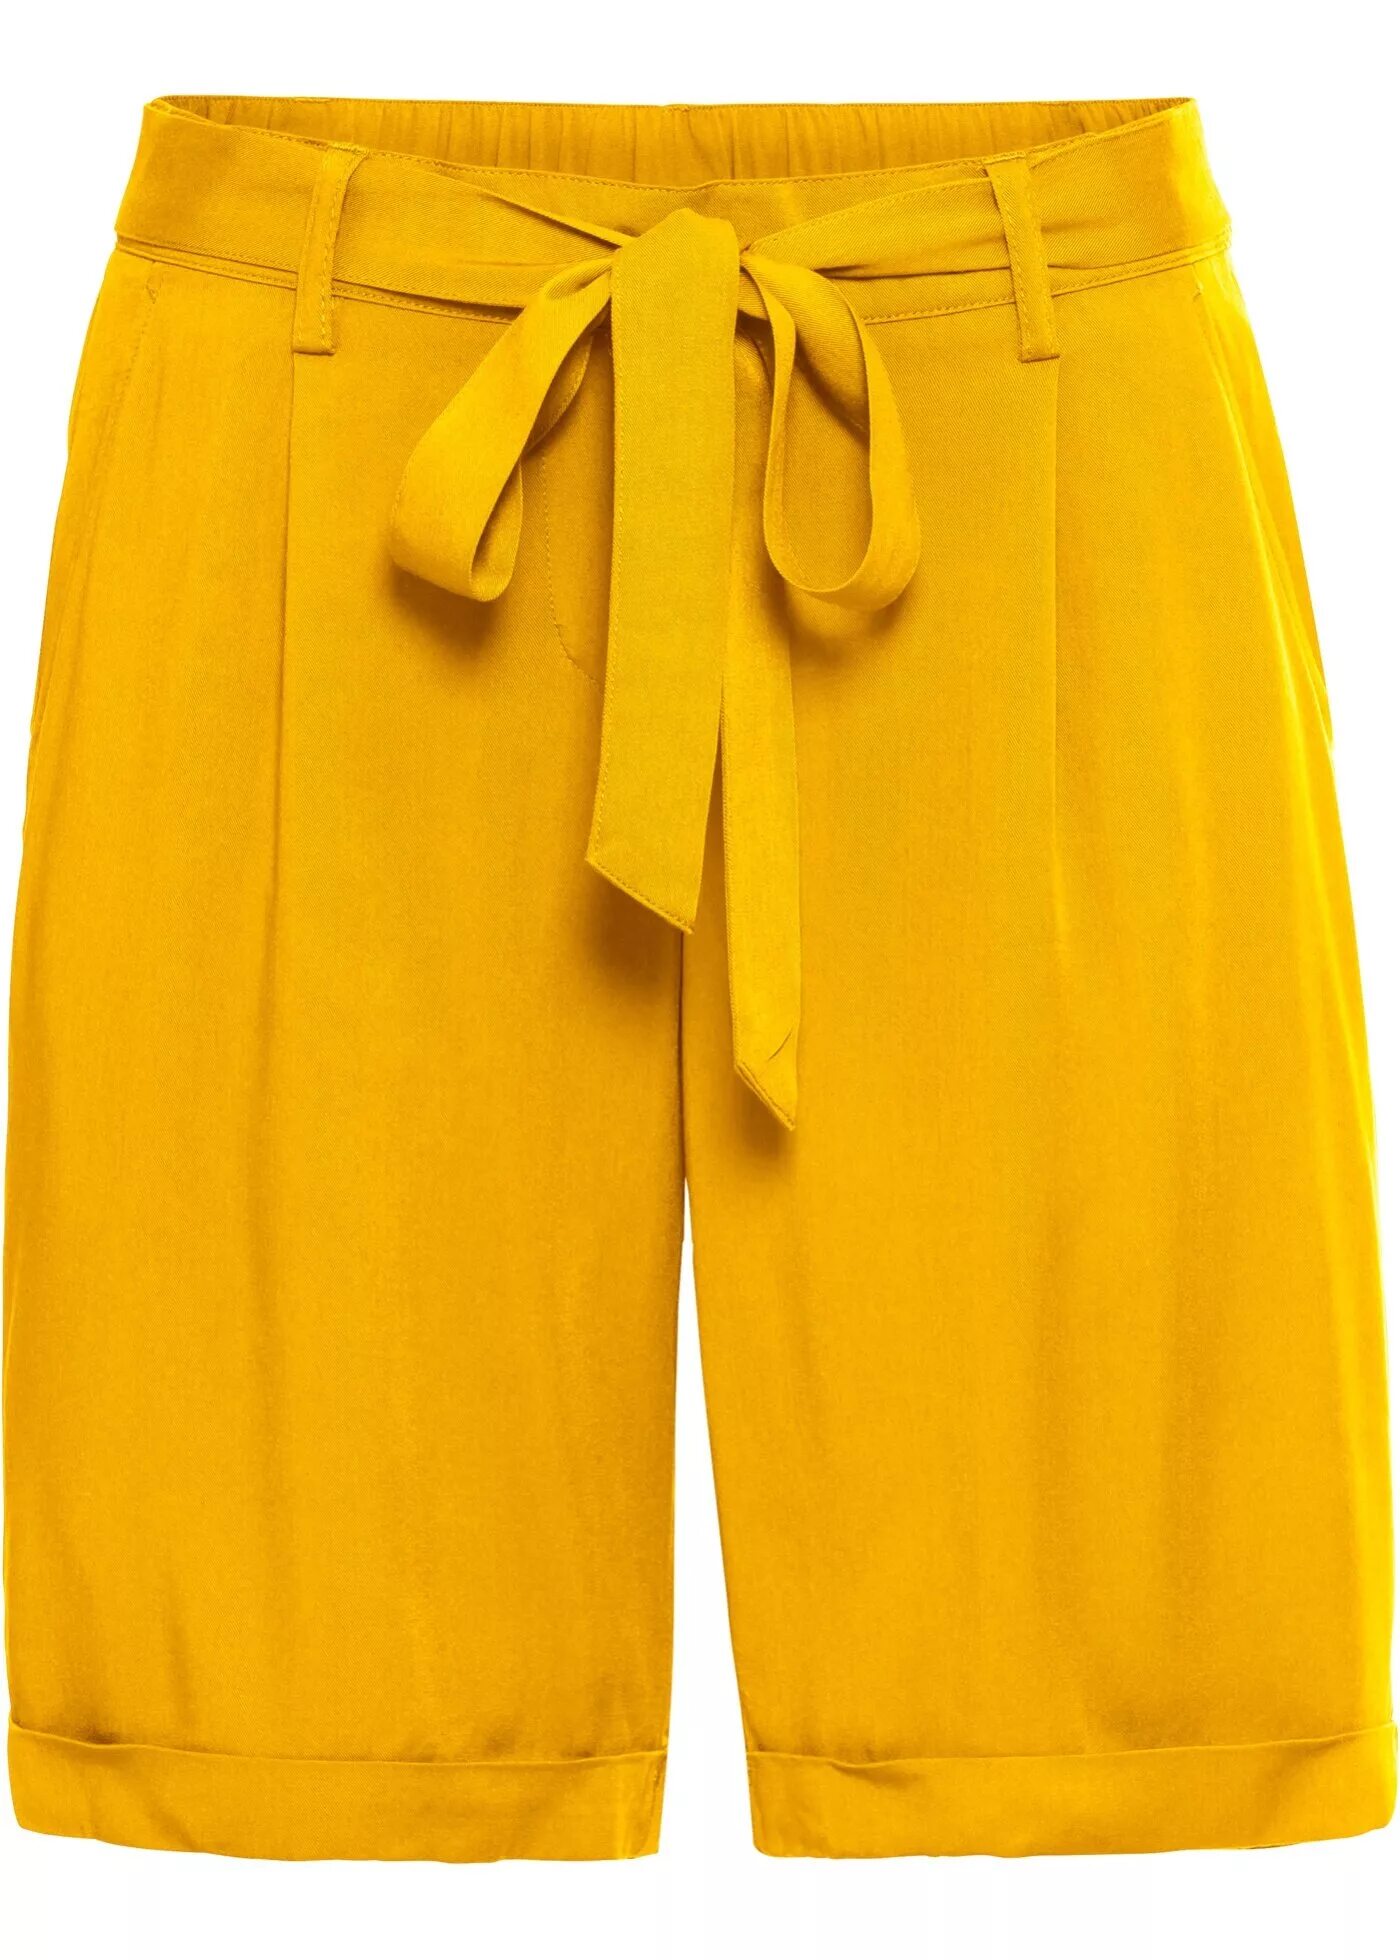 Желтые мужские шорты. Шорты ONDAR бермуды. Бермуды женские Бонпри. Желтые шорты. Желтые шорты женские.